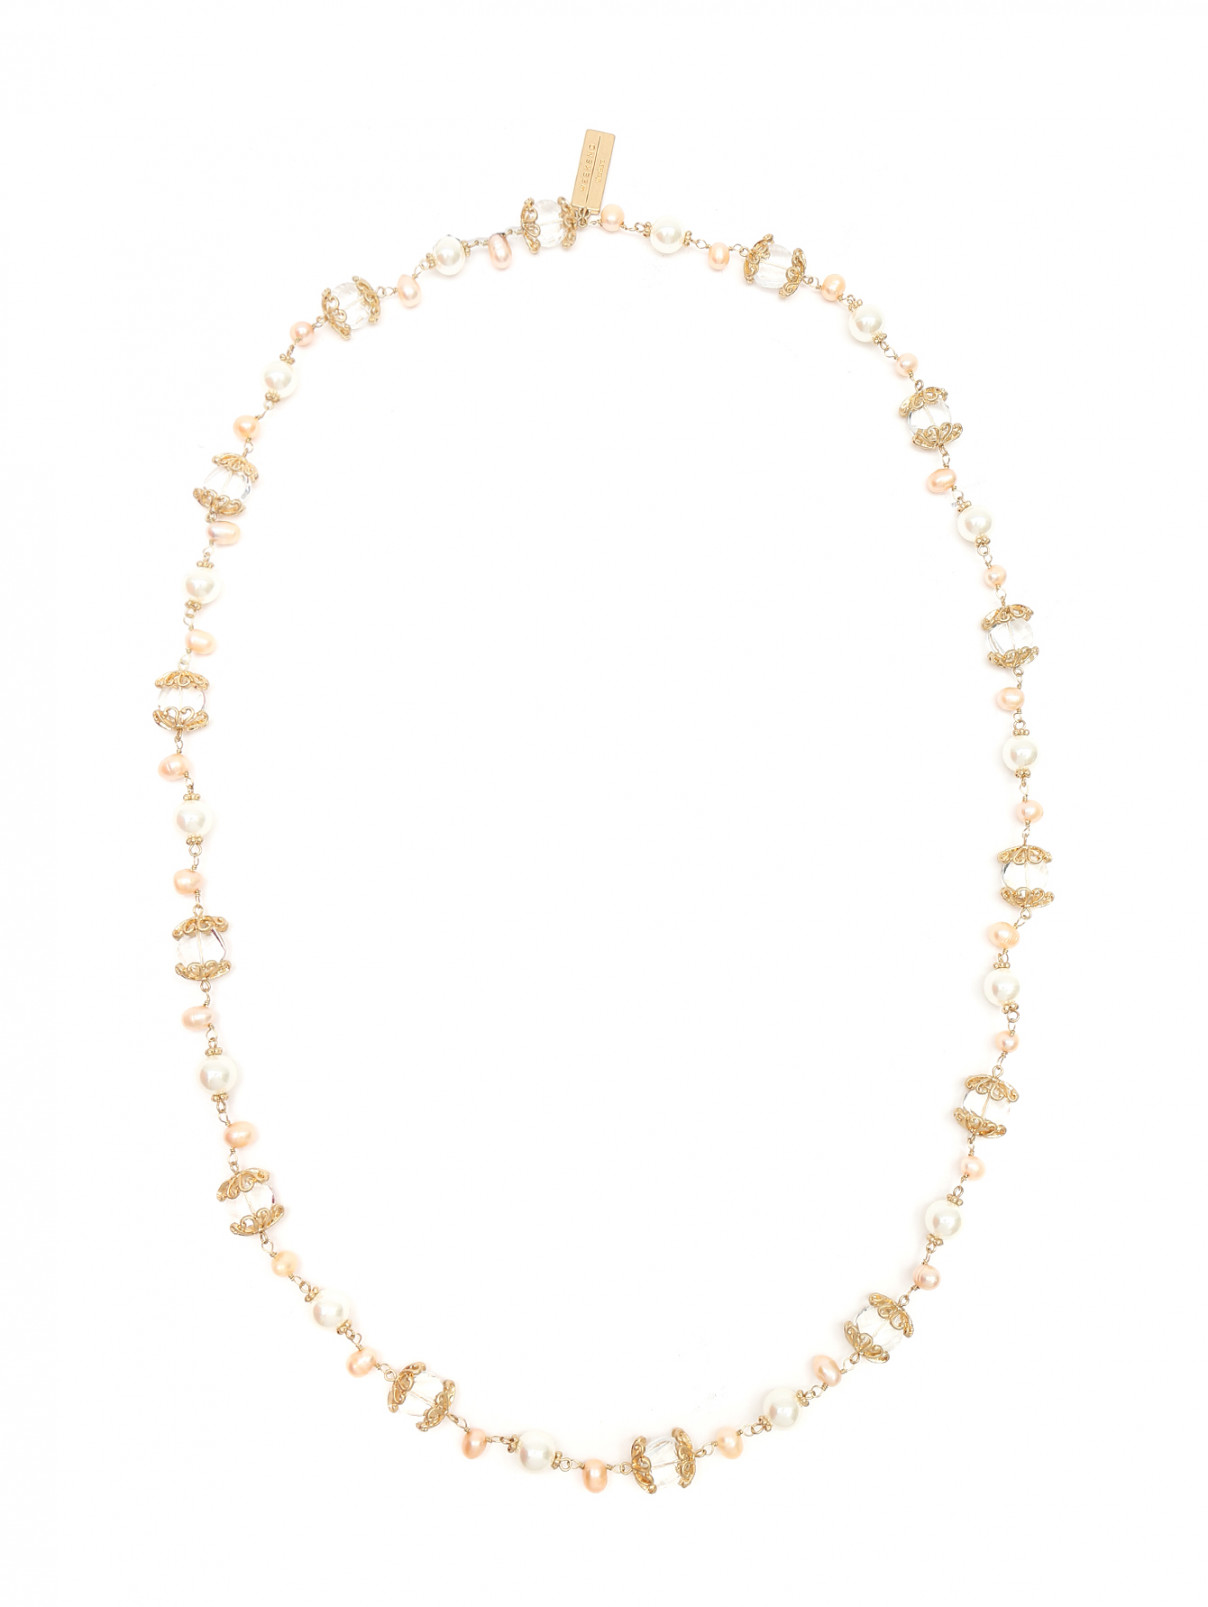 Ожерелье из металла декорированное кристаллами Weekend Max Mara  –  Общий вид  – Цвет:  Мультиколор